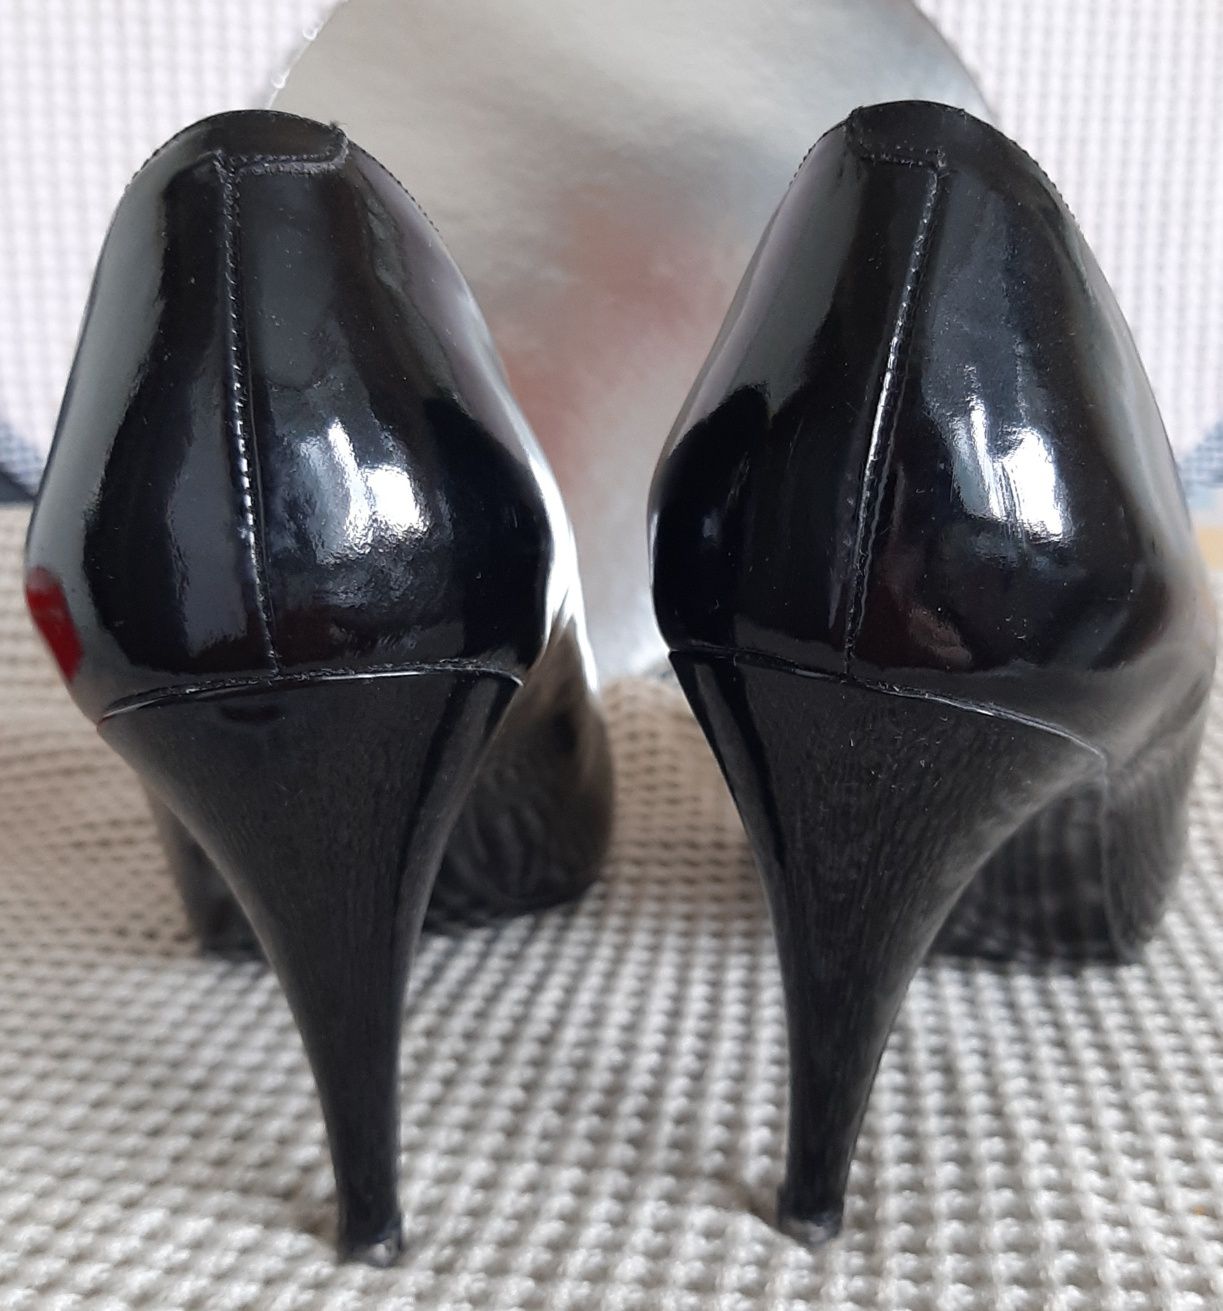 Элегантные женские туфли, Италия, 39 р., натуральная кожа лак, б/у